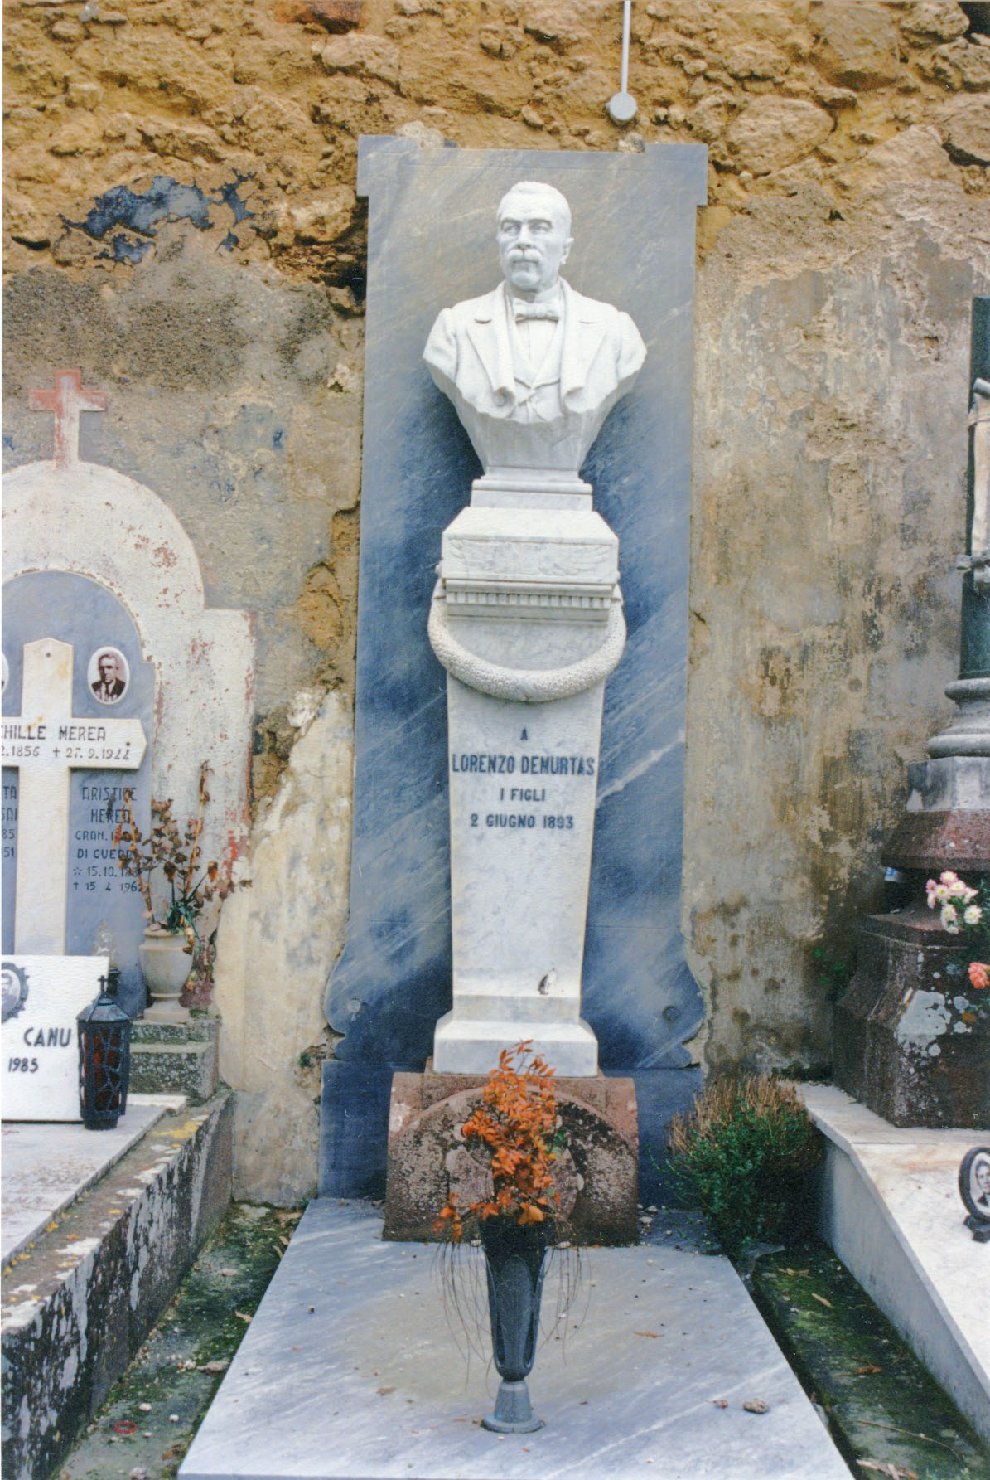 Ritratto di lorenzo demurtas, busto ritratto d'uomo (monumento funebre)